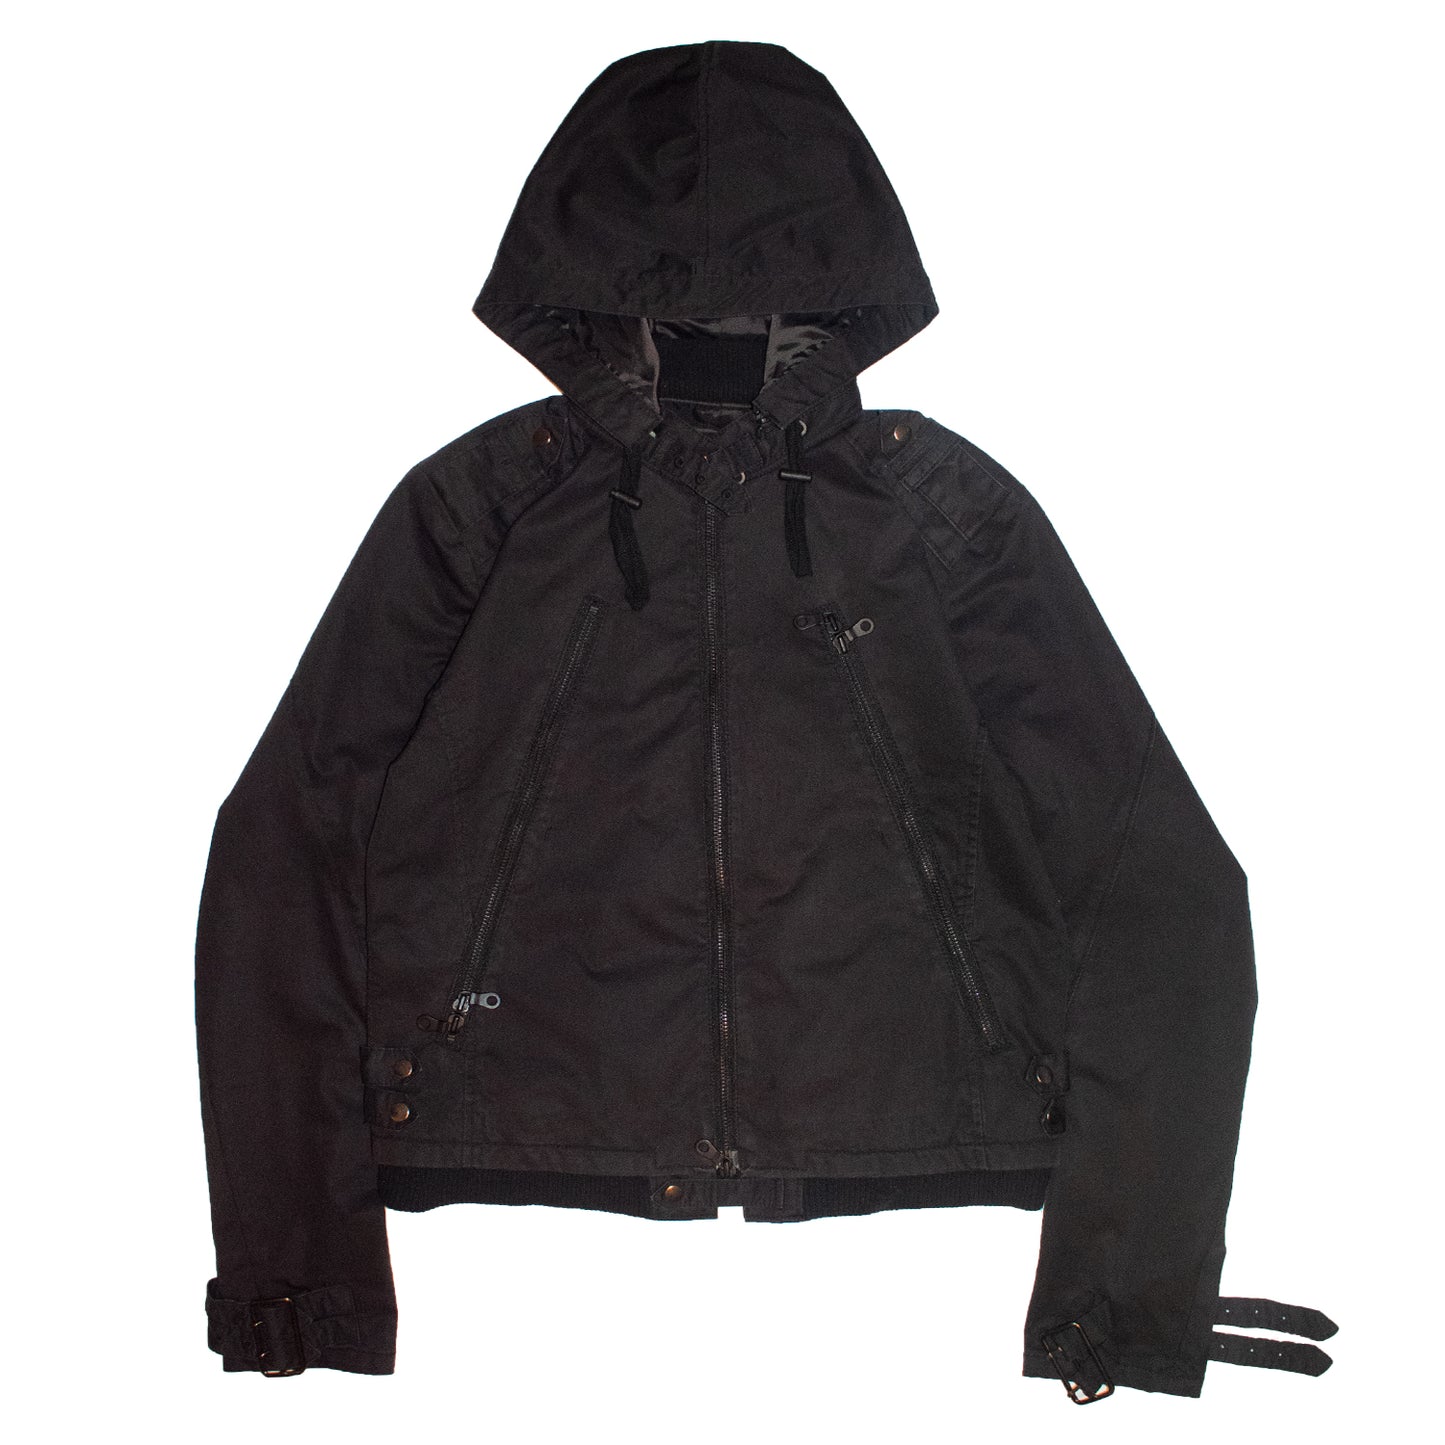 PPFM Multi-Zip Nylon Jacket – 2010